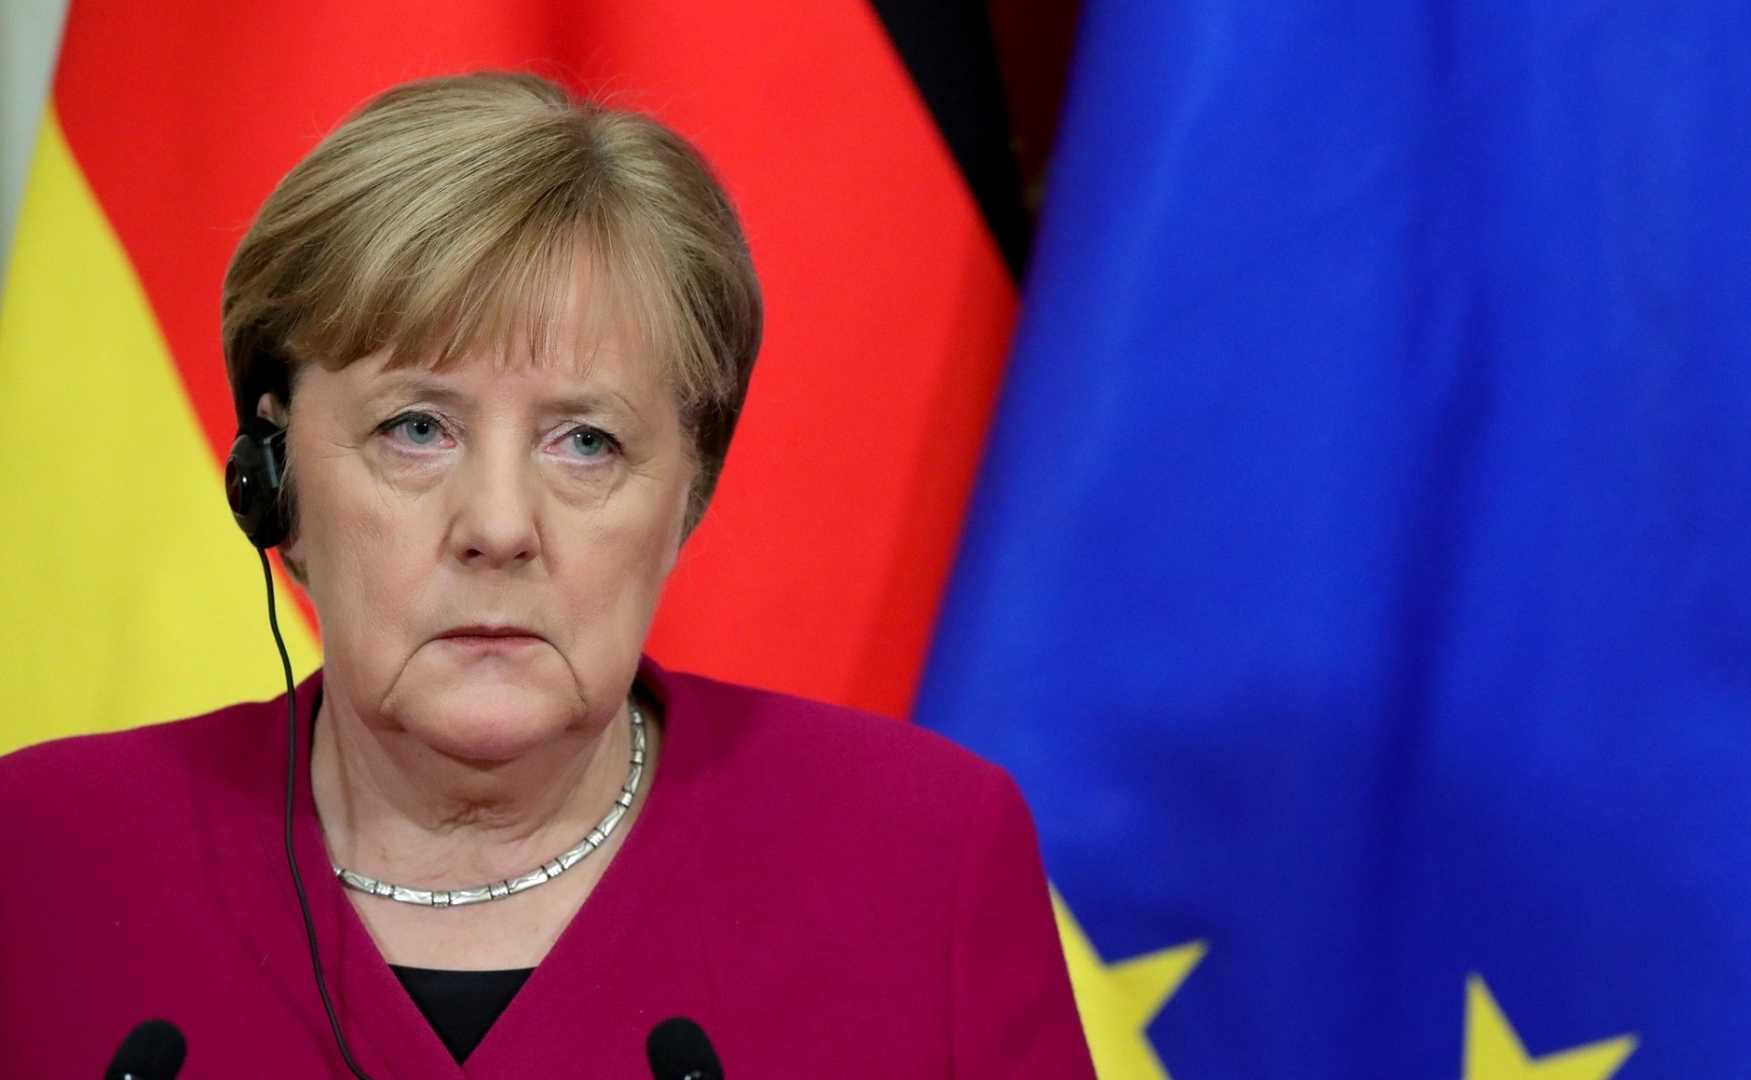 Ангела меркель: биография, личная жизнь, политическая карьера